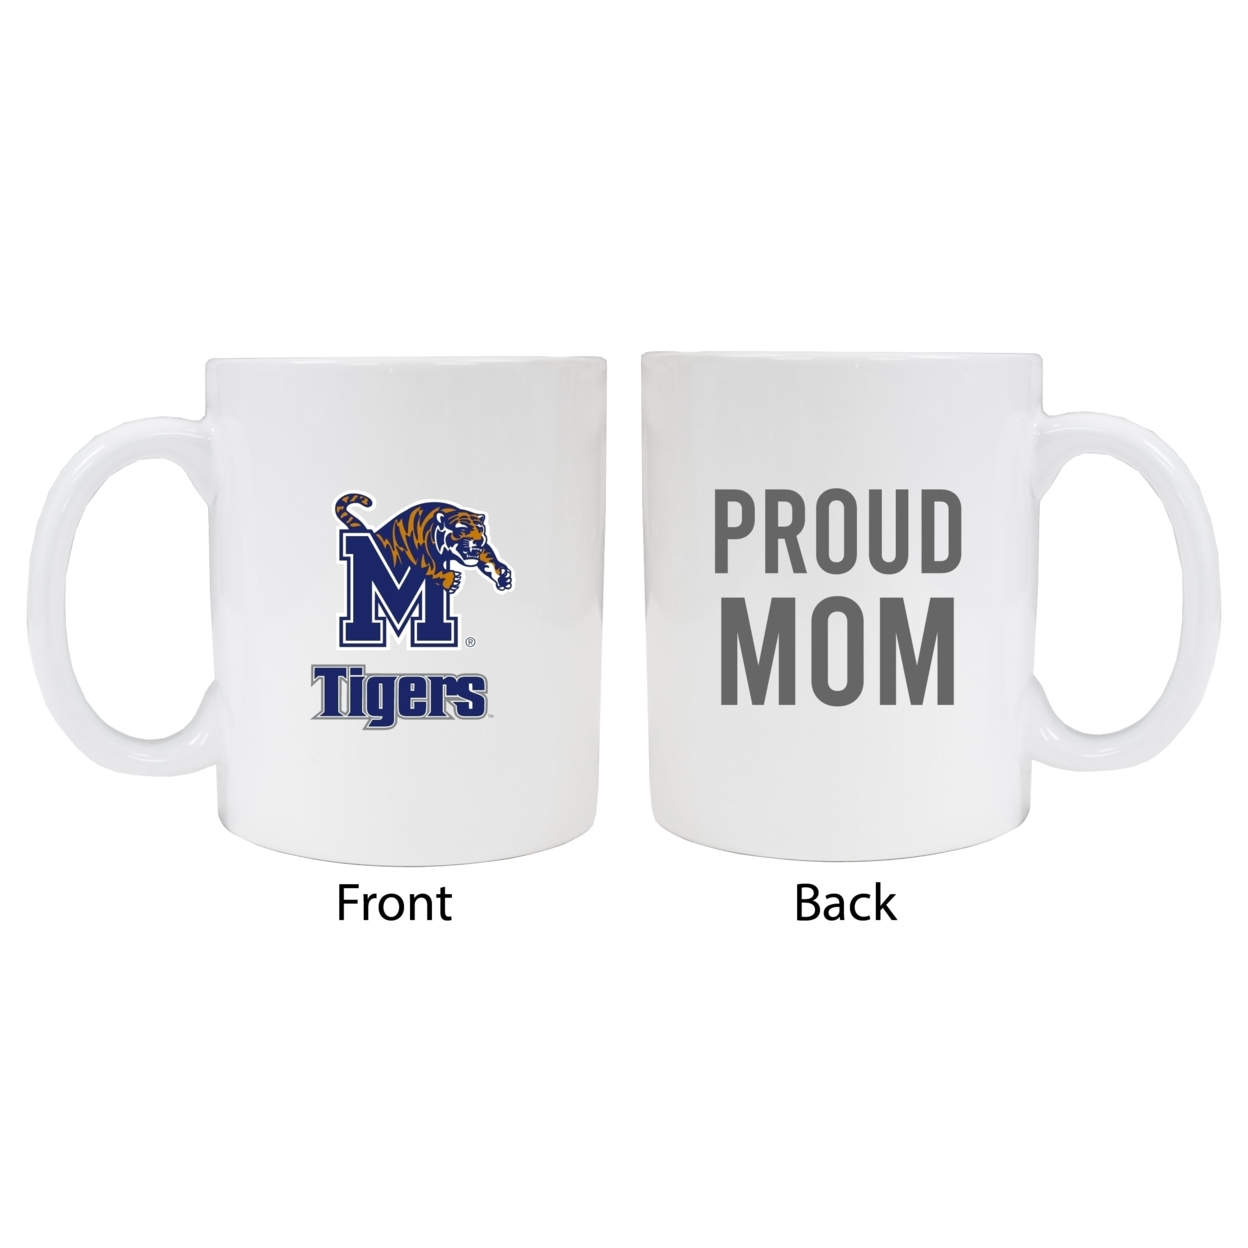 Memphis Tigers Proud Mom Ceramic Coffee Mug - White